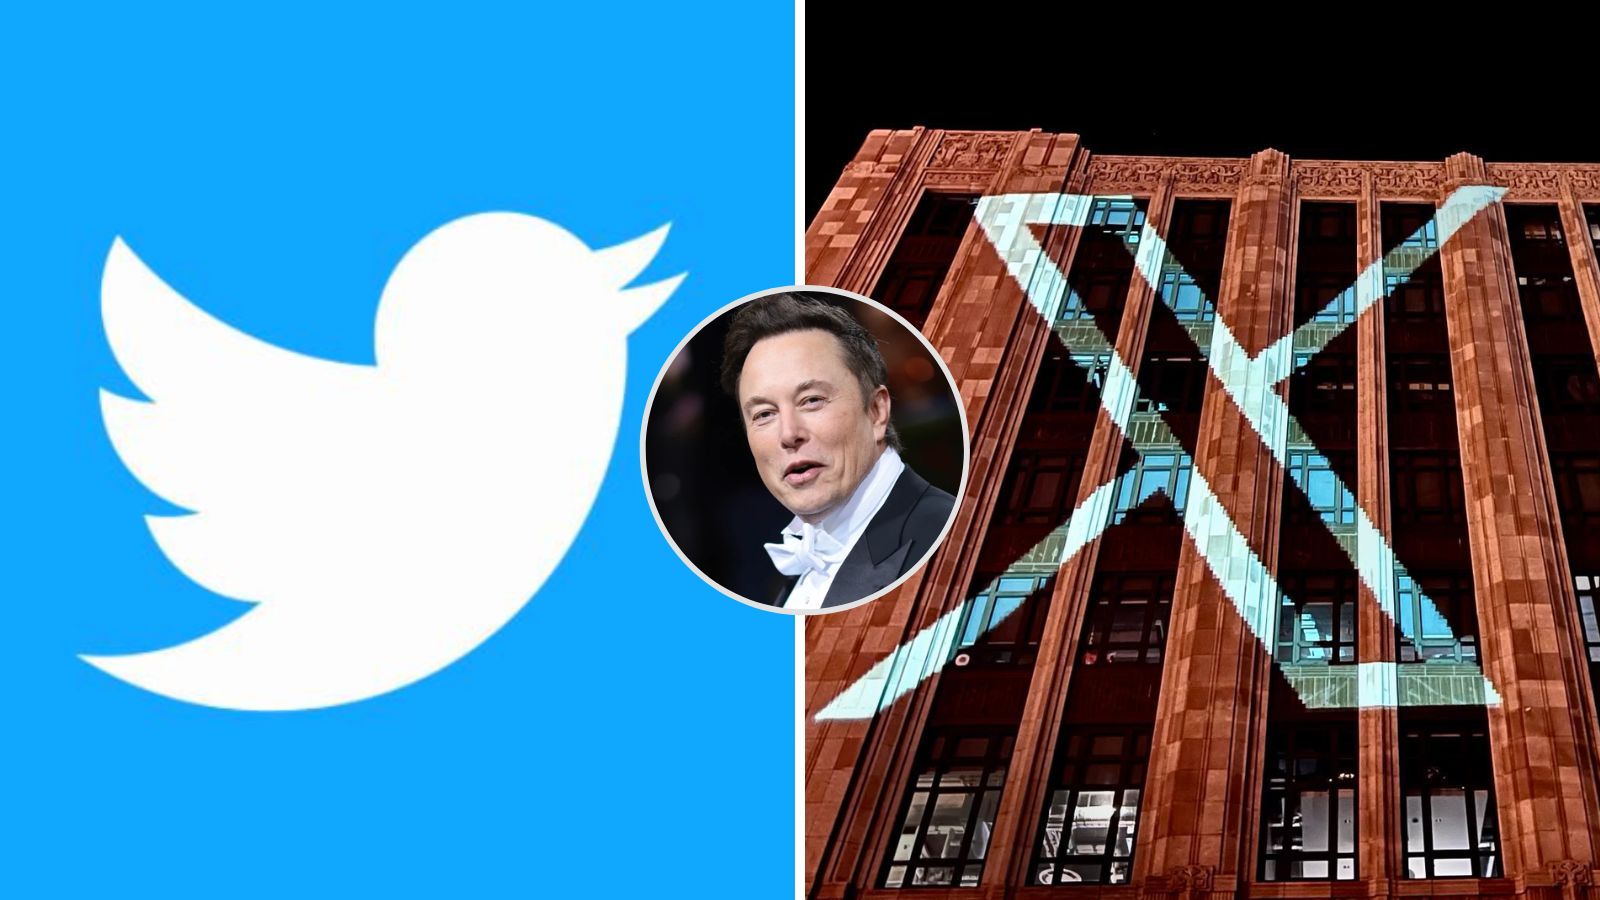 Elon musk cambiará el nombre de Twittere a X